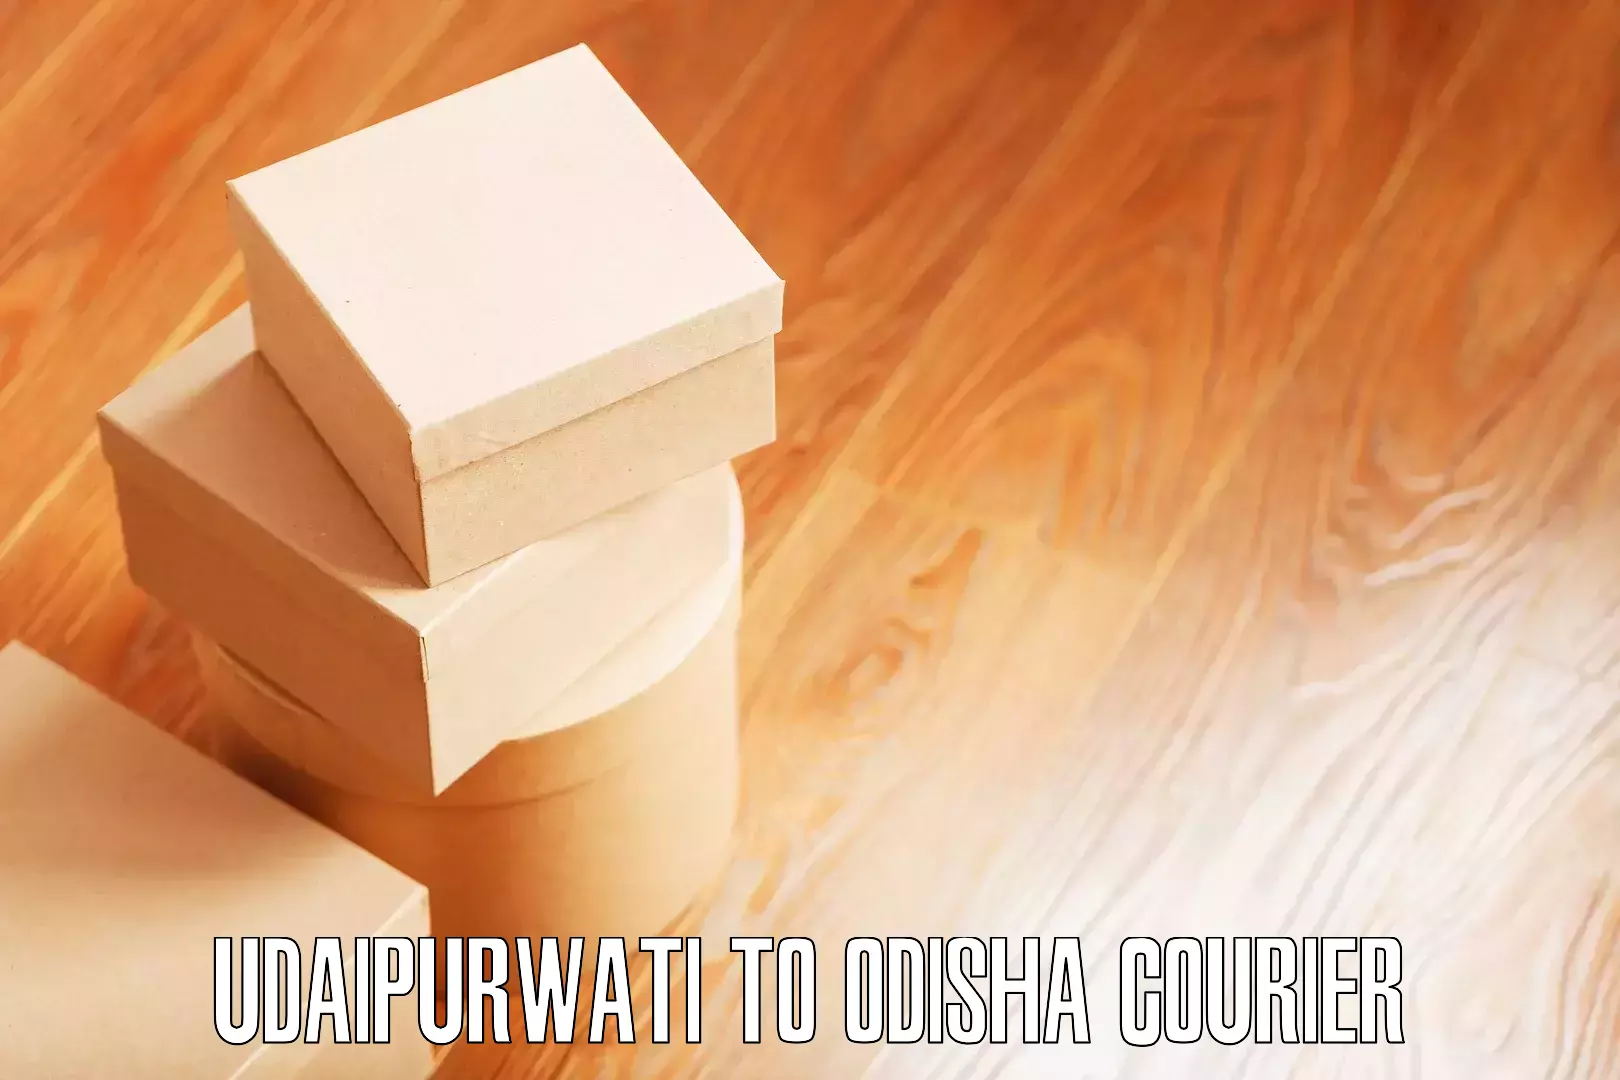 Nationwide furniture movers Udaipurwati to Odisha